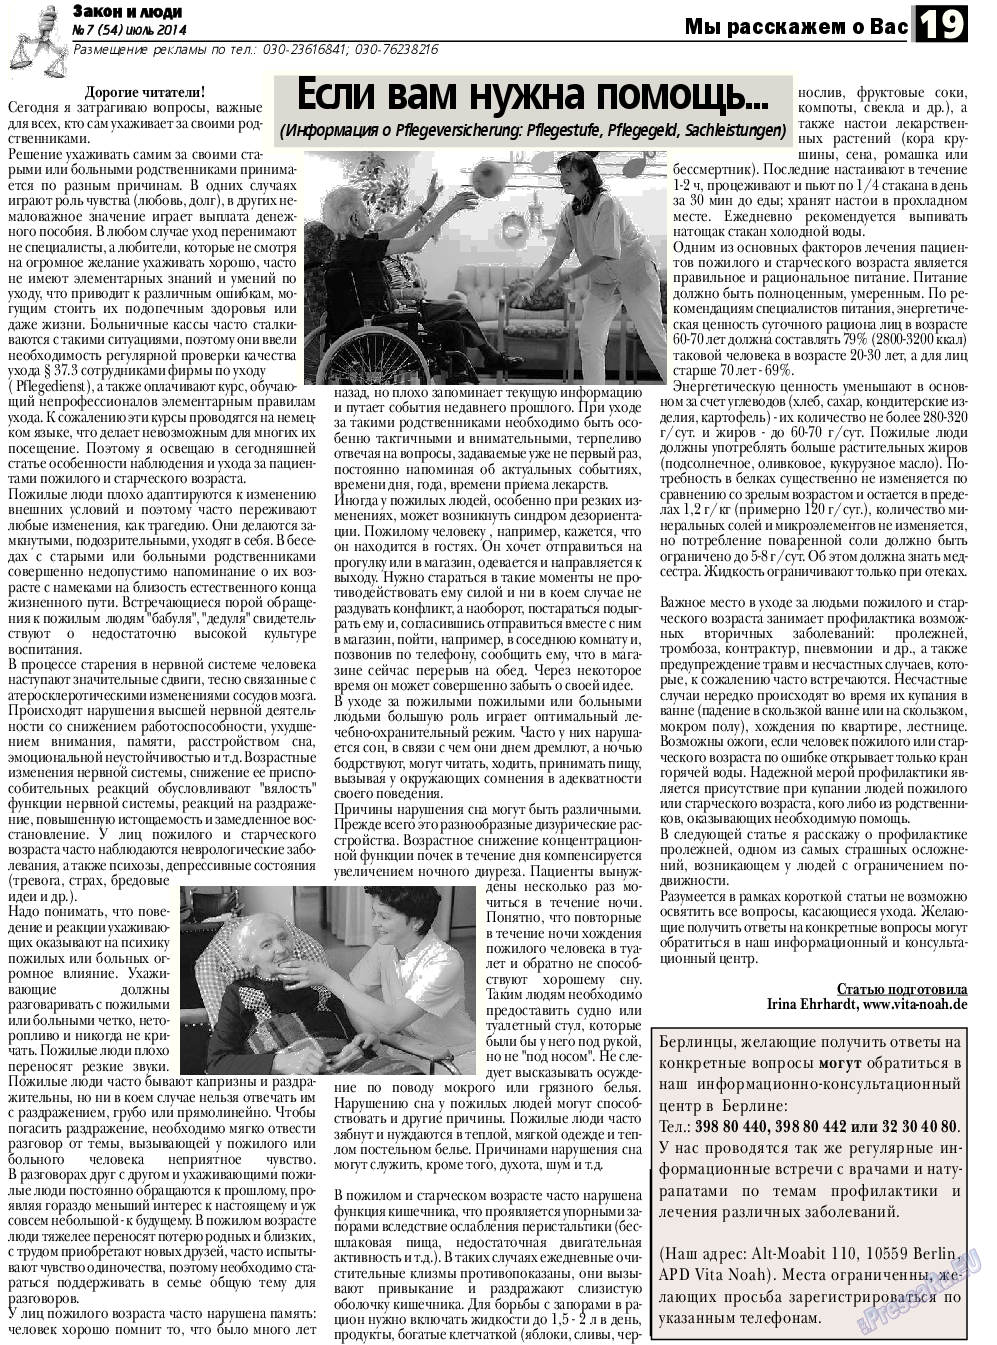 Закон и люди, газета. 2014 №7 стр.19